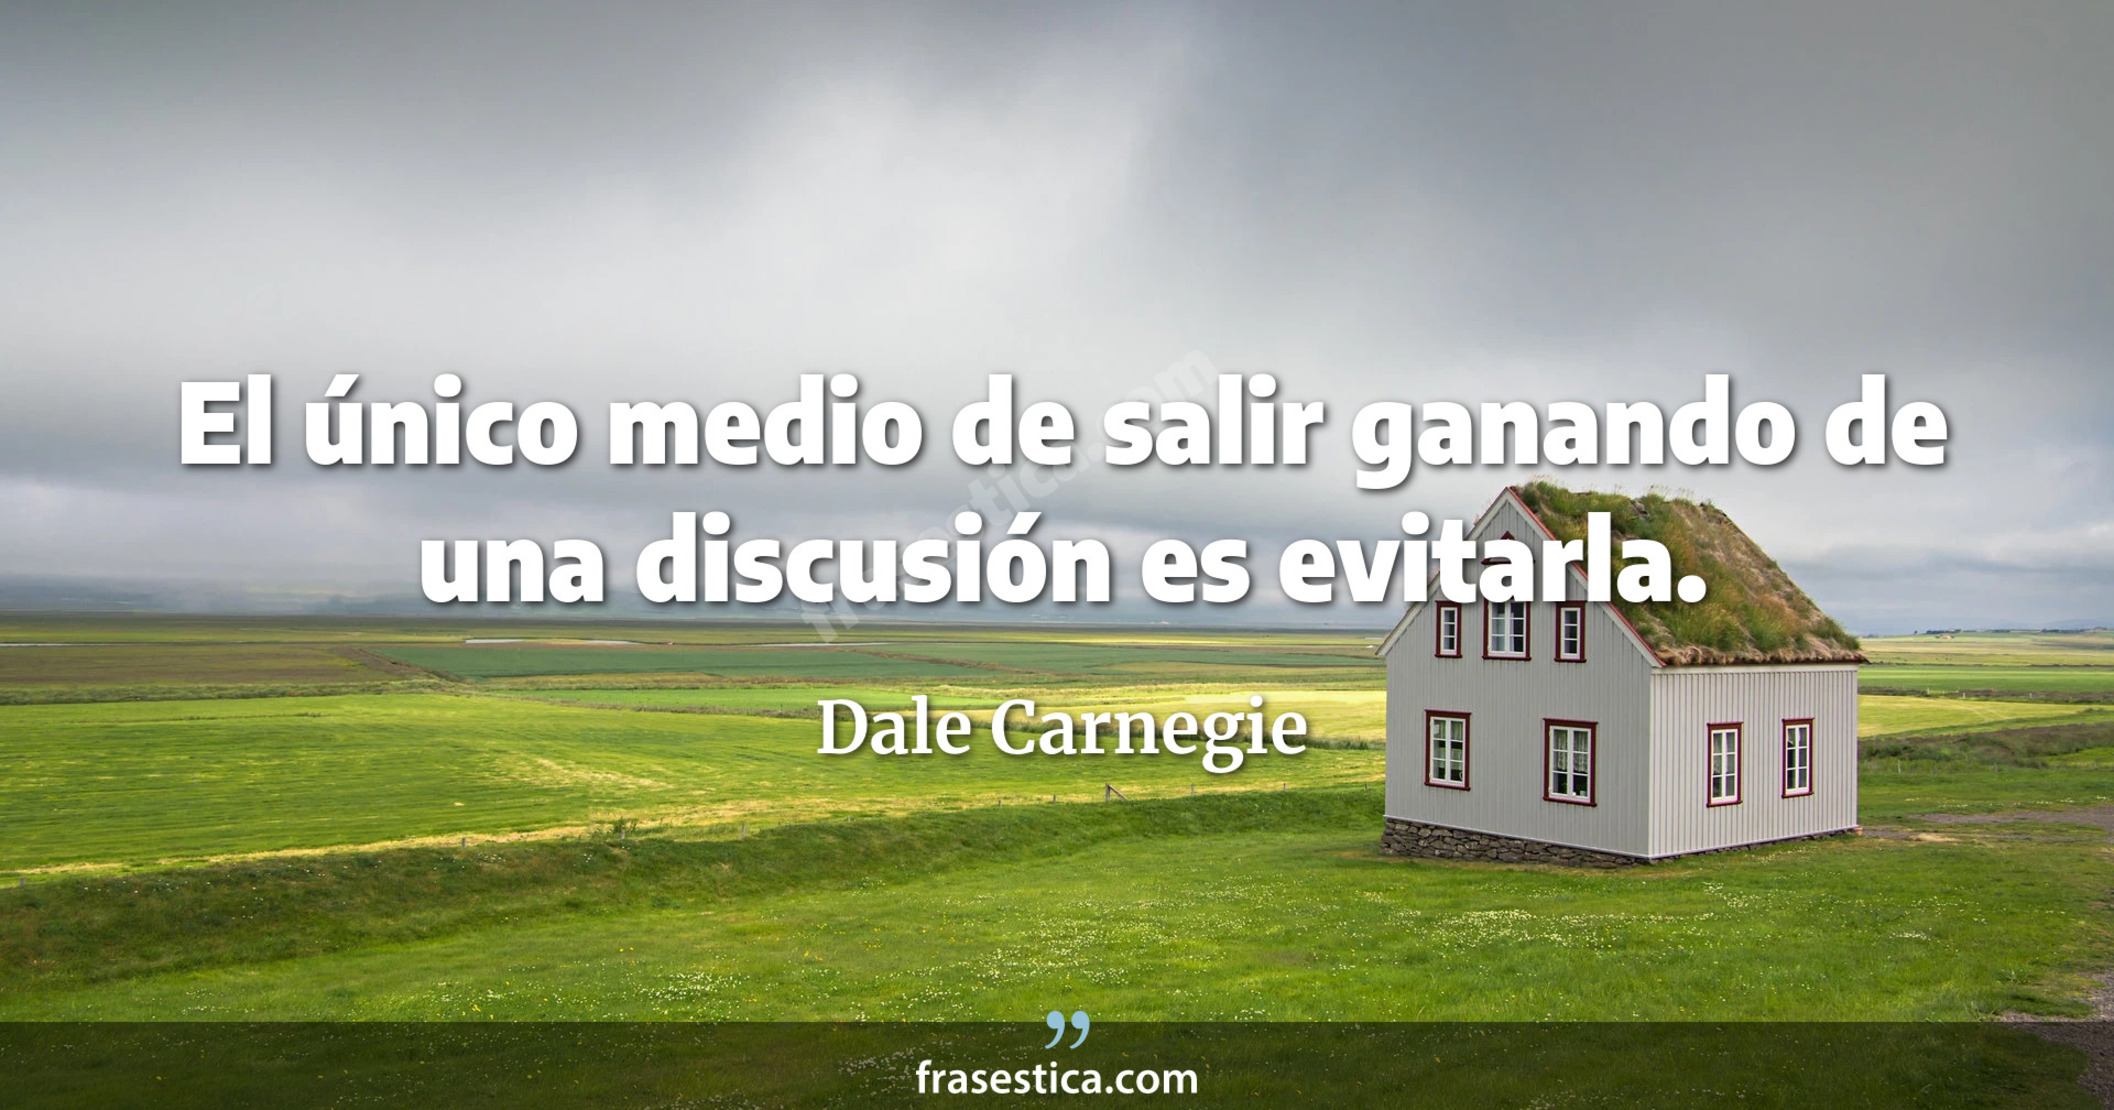 El único medio de salir ganando de una discusión es evitarla. - Dale Carnegie